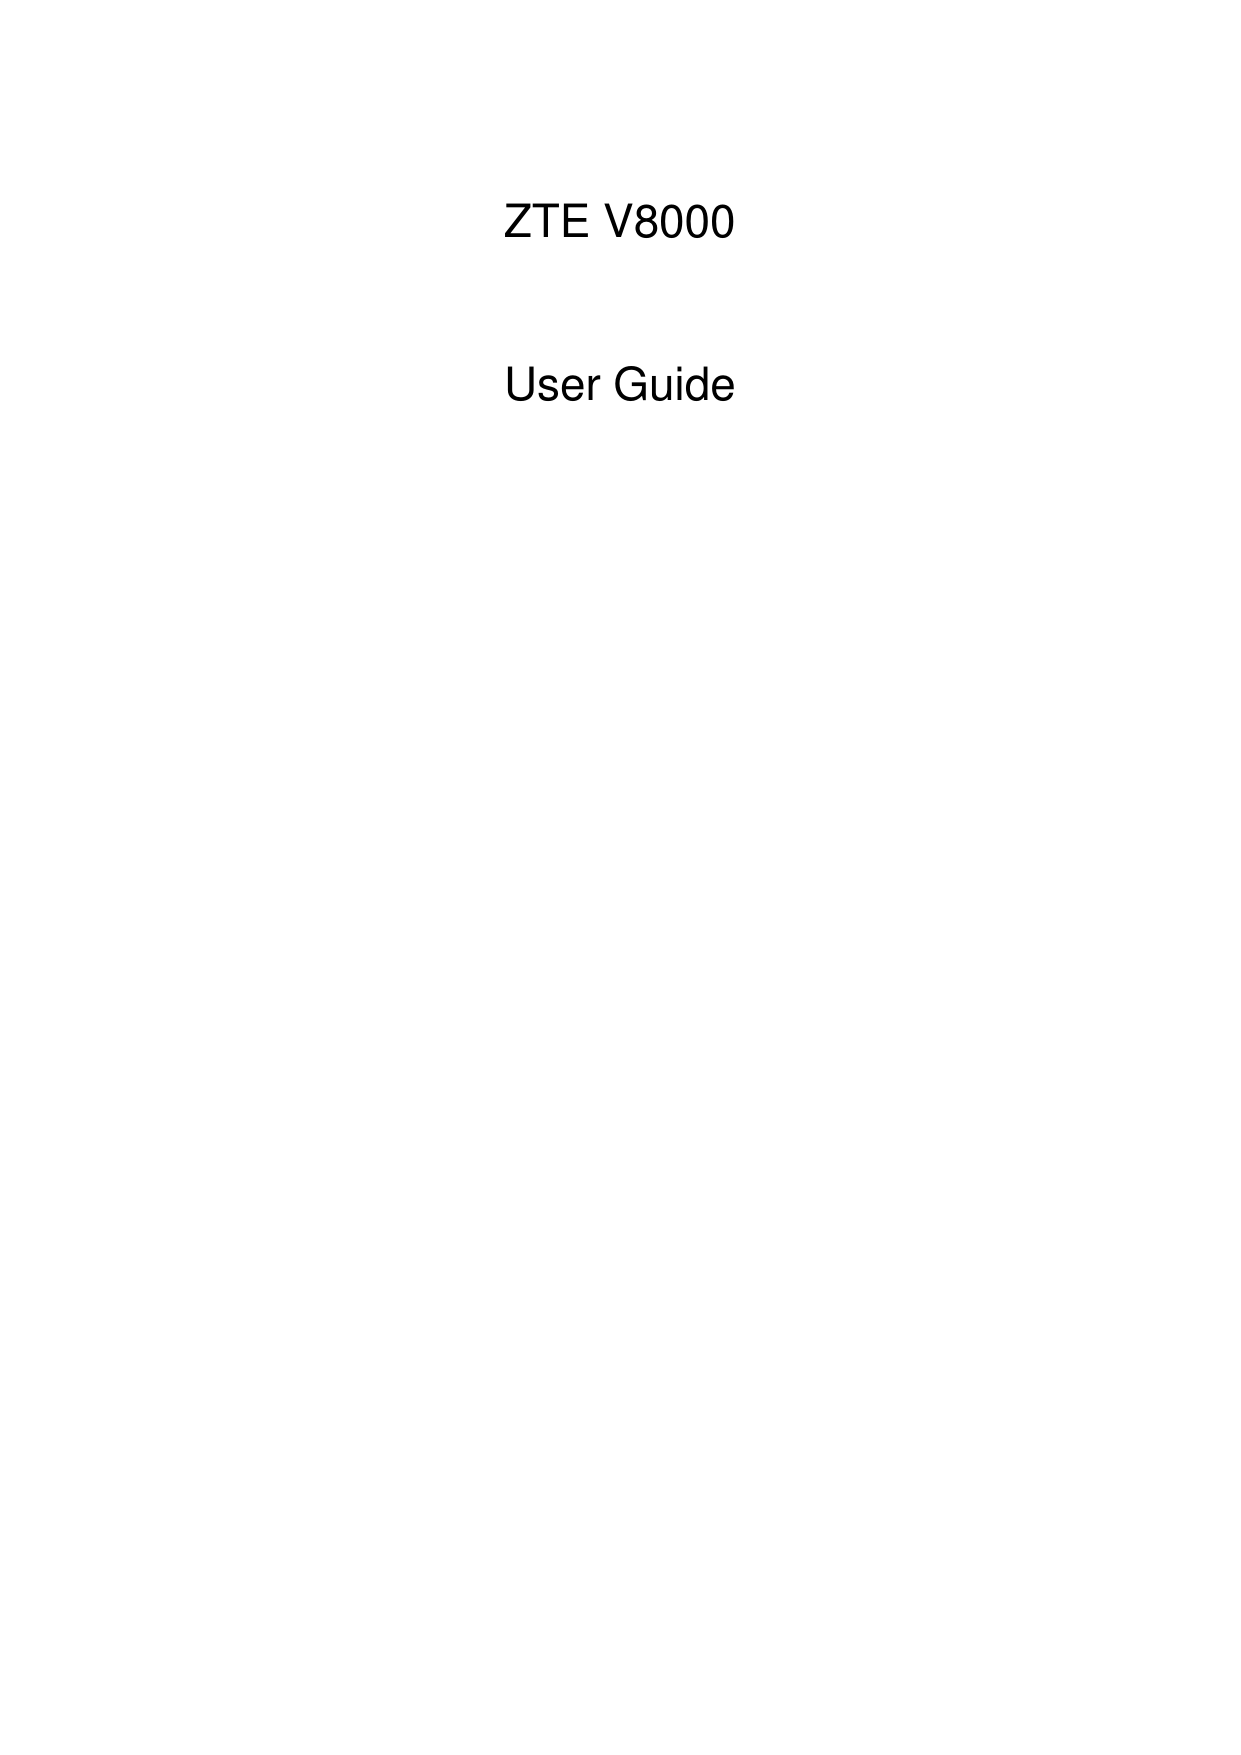    ZTE V8000  User Guide 